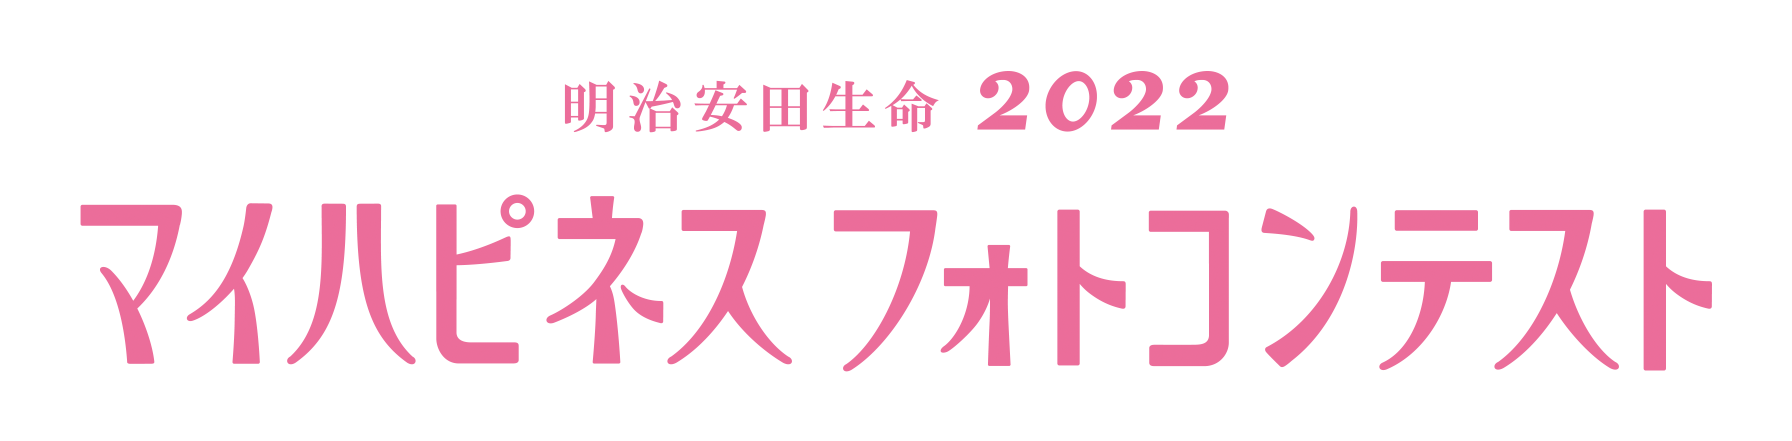 明治安田生命 2022 マイハピネスフォトコンテスト